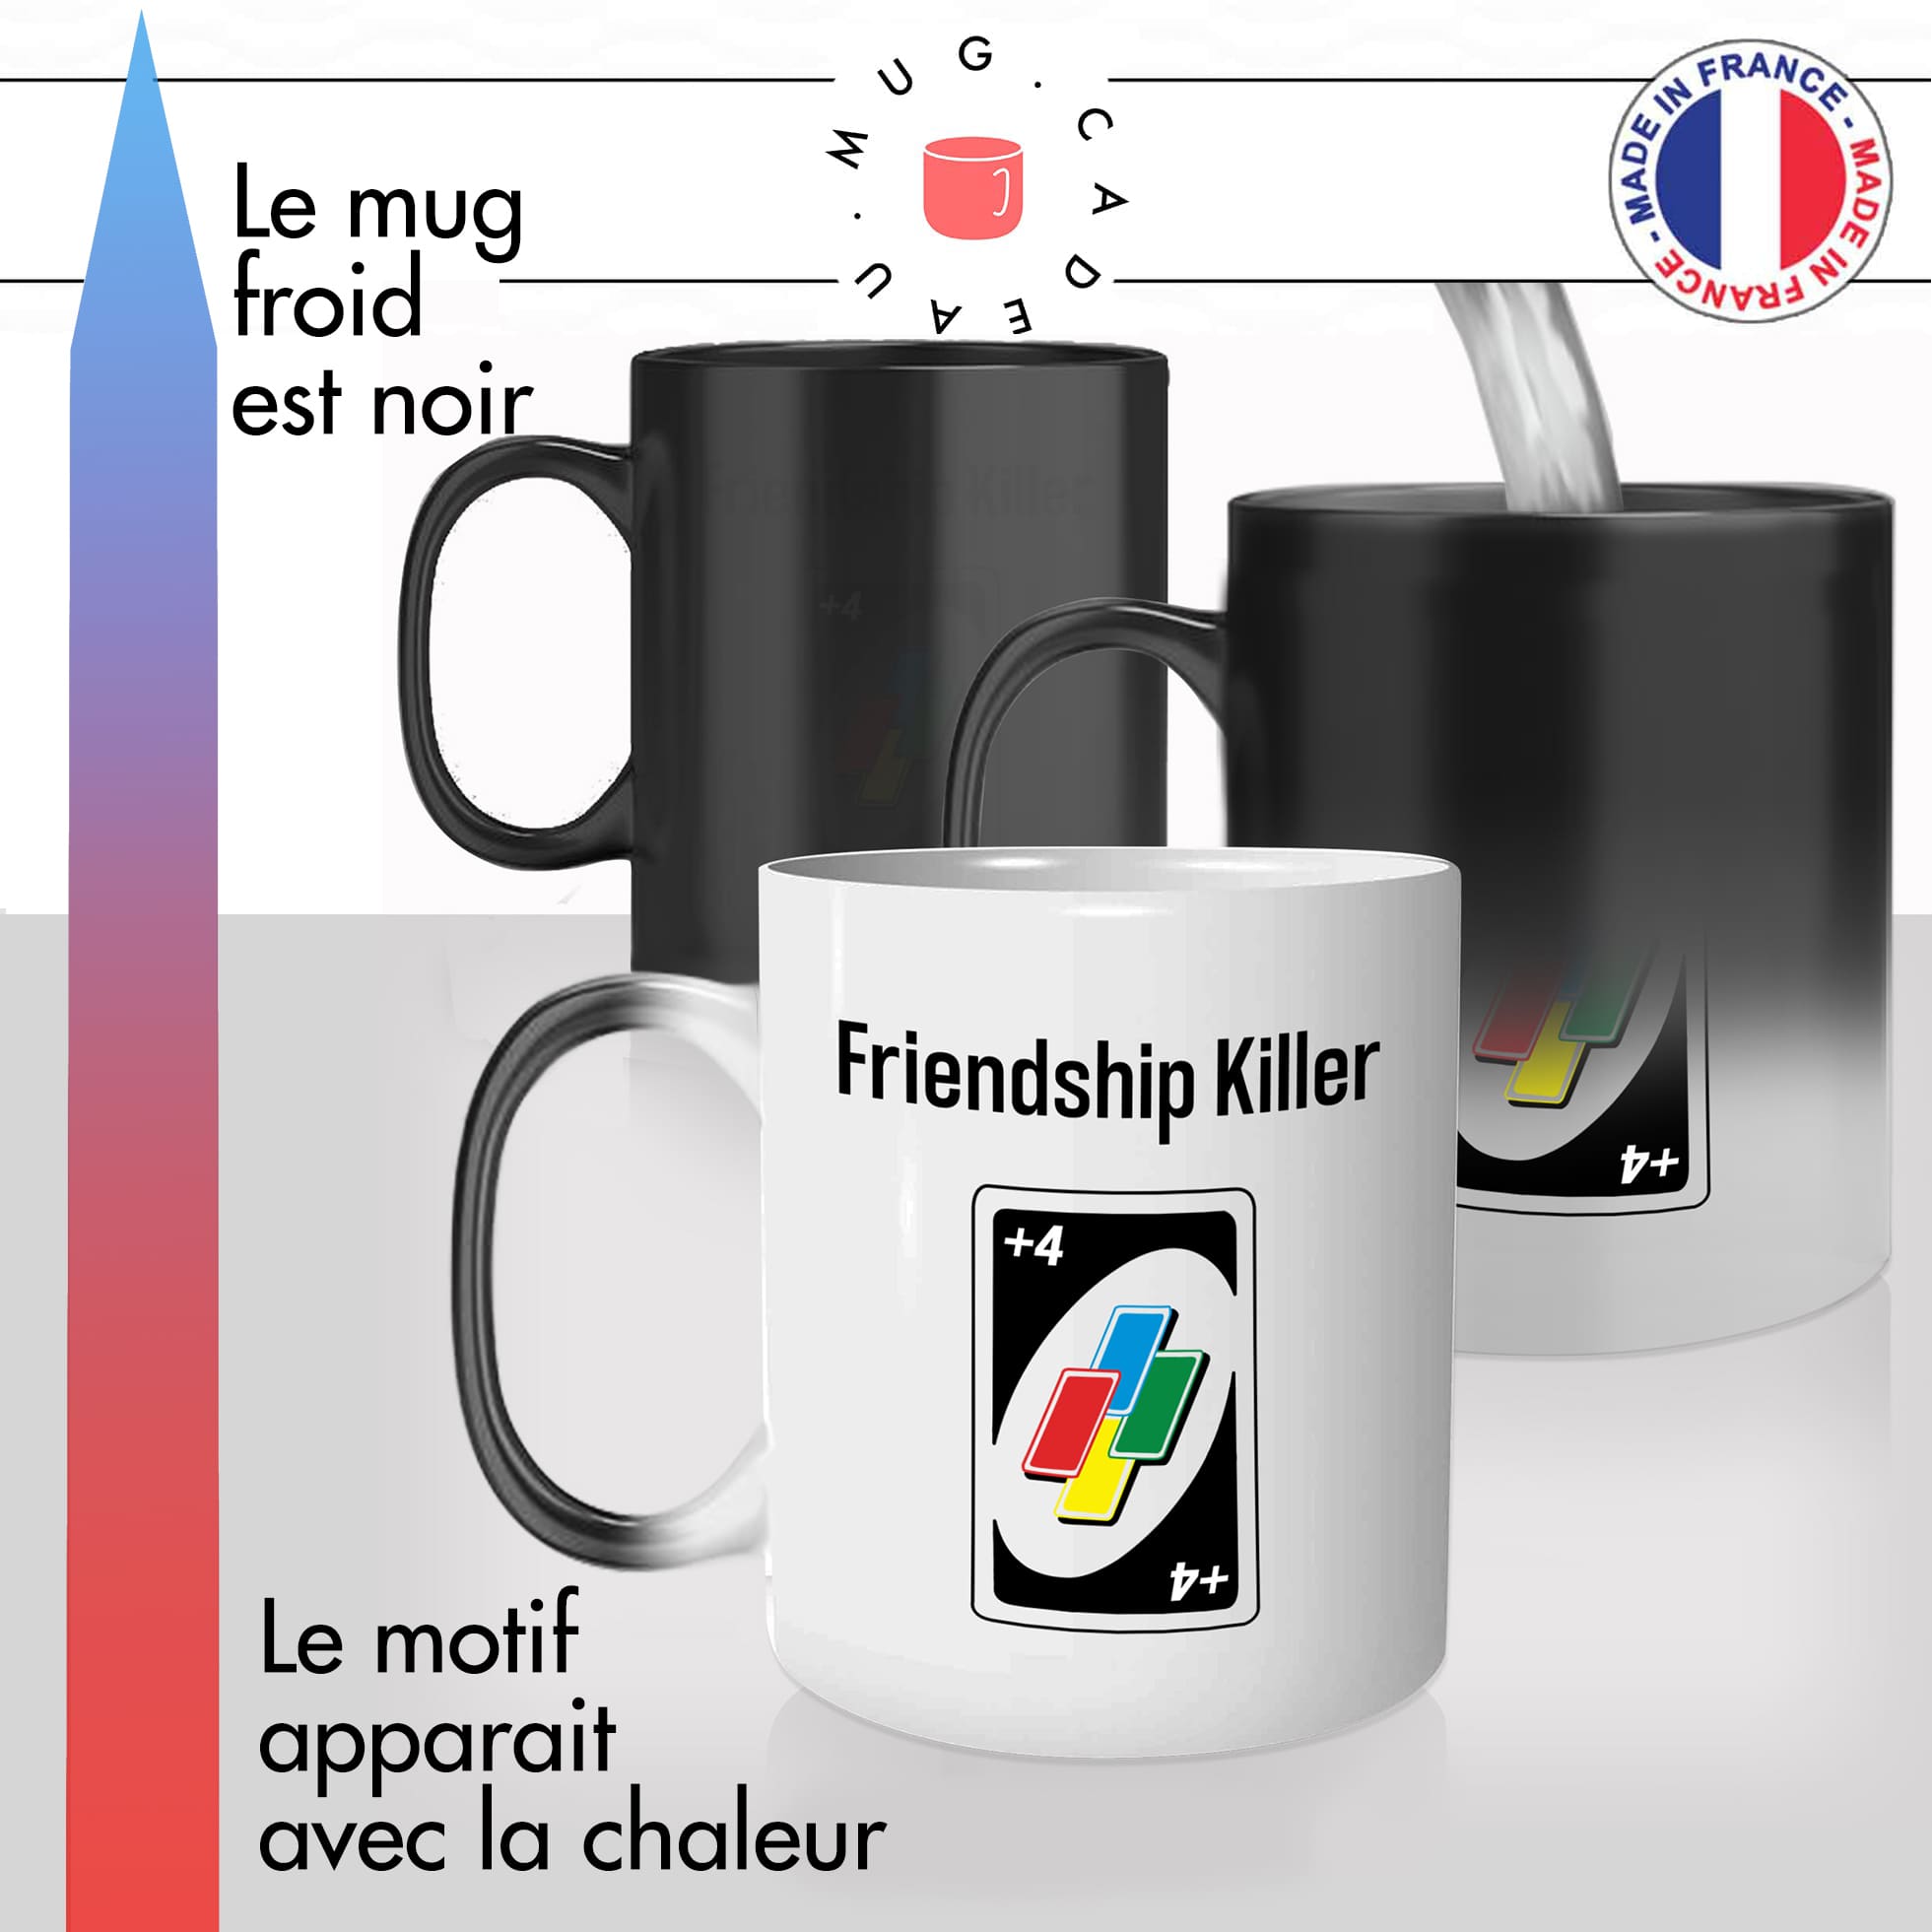 mug magique thermoréactif thermo chauffant personnalisé uno jeux de societé cartes friendship killer +4 pioche idée cadeau fun original